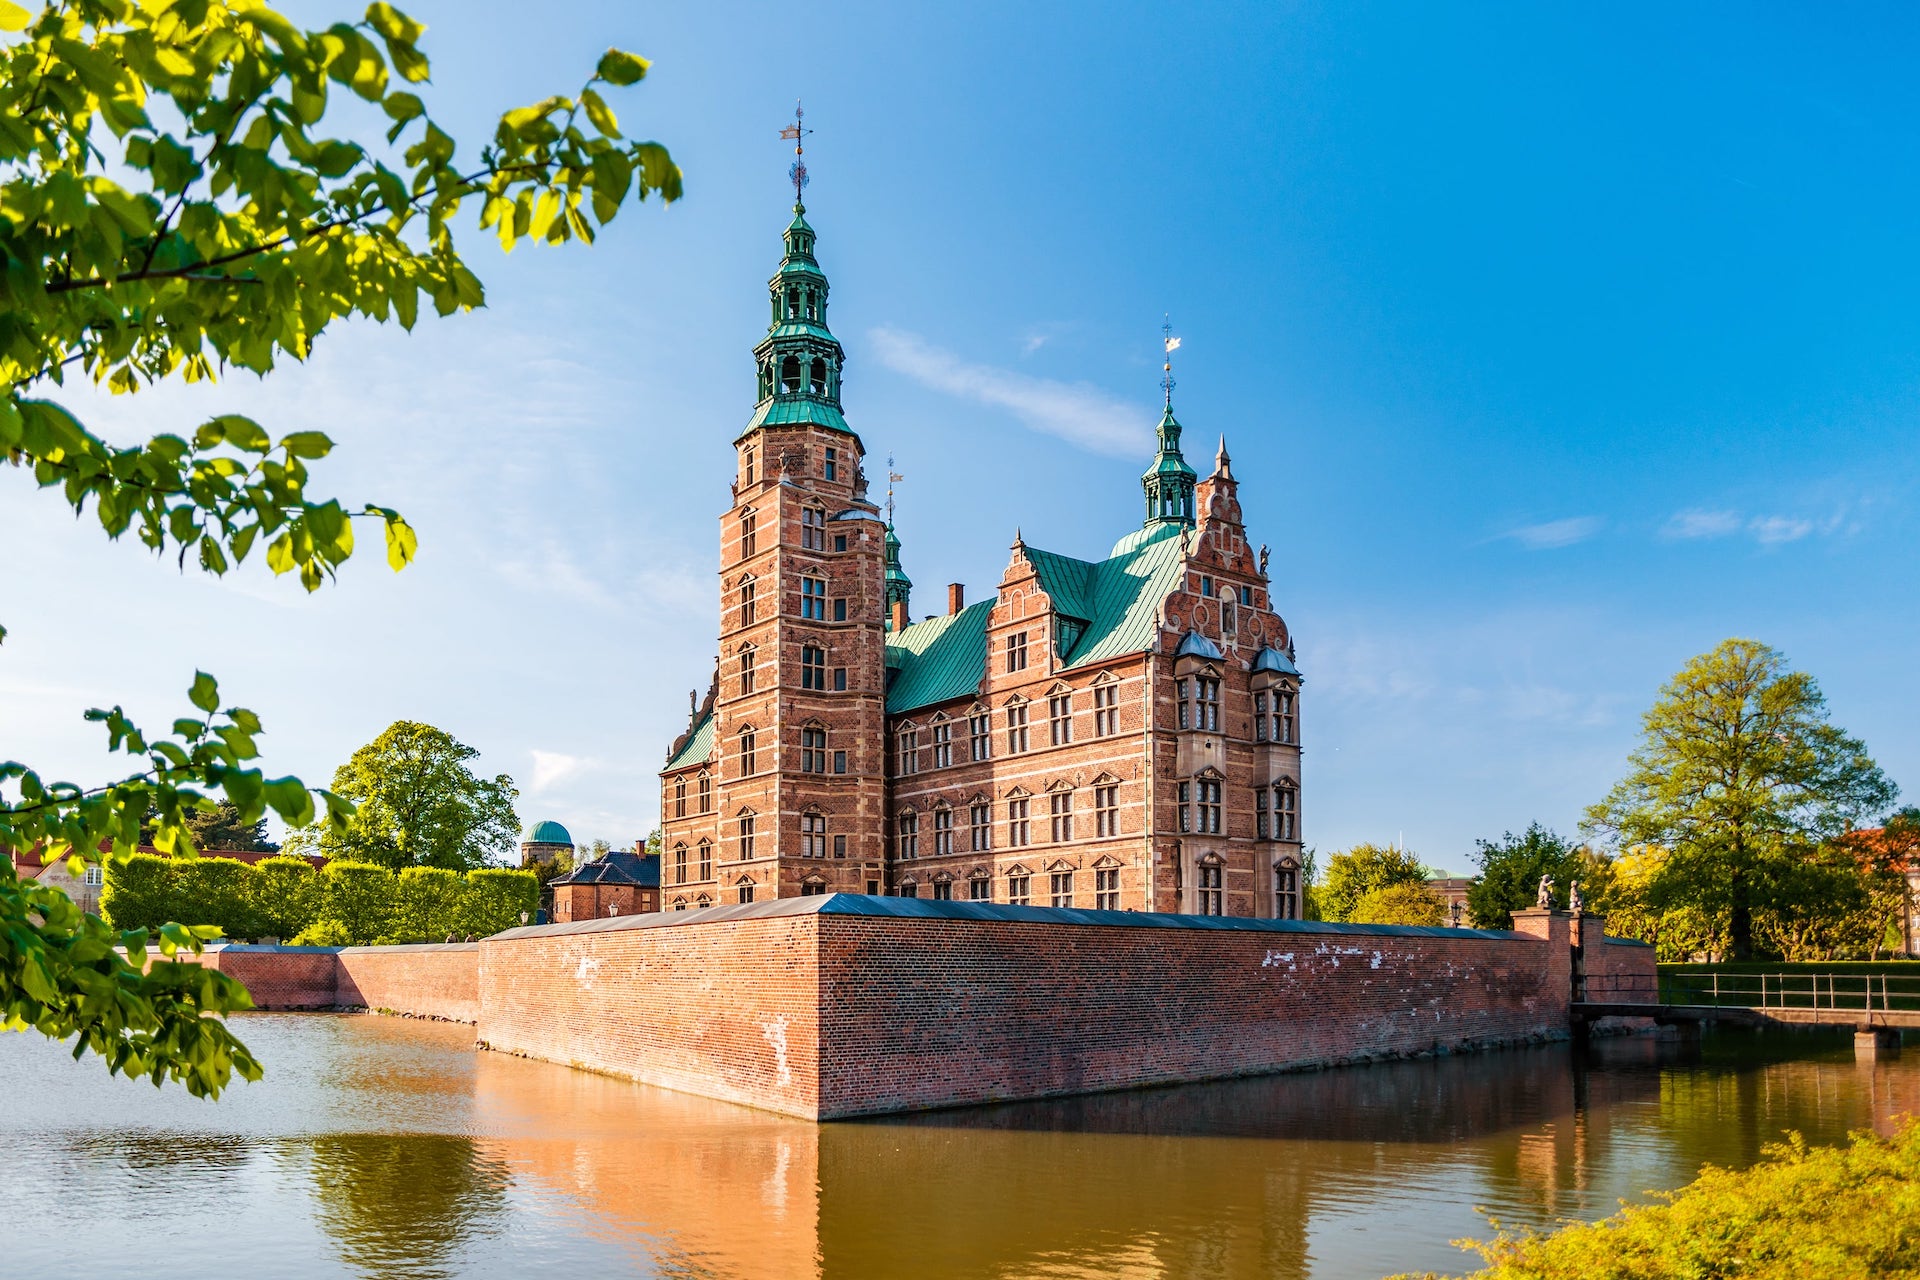 Das Schloss Rosenborg gehört auf die Liste der schönsten Attraktionen in Kopenhagen